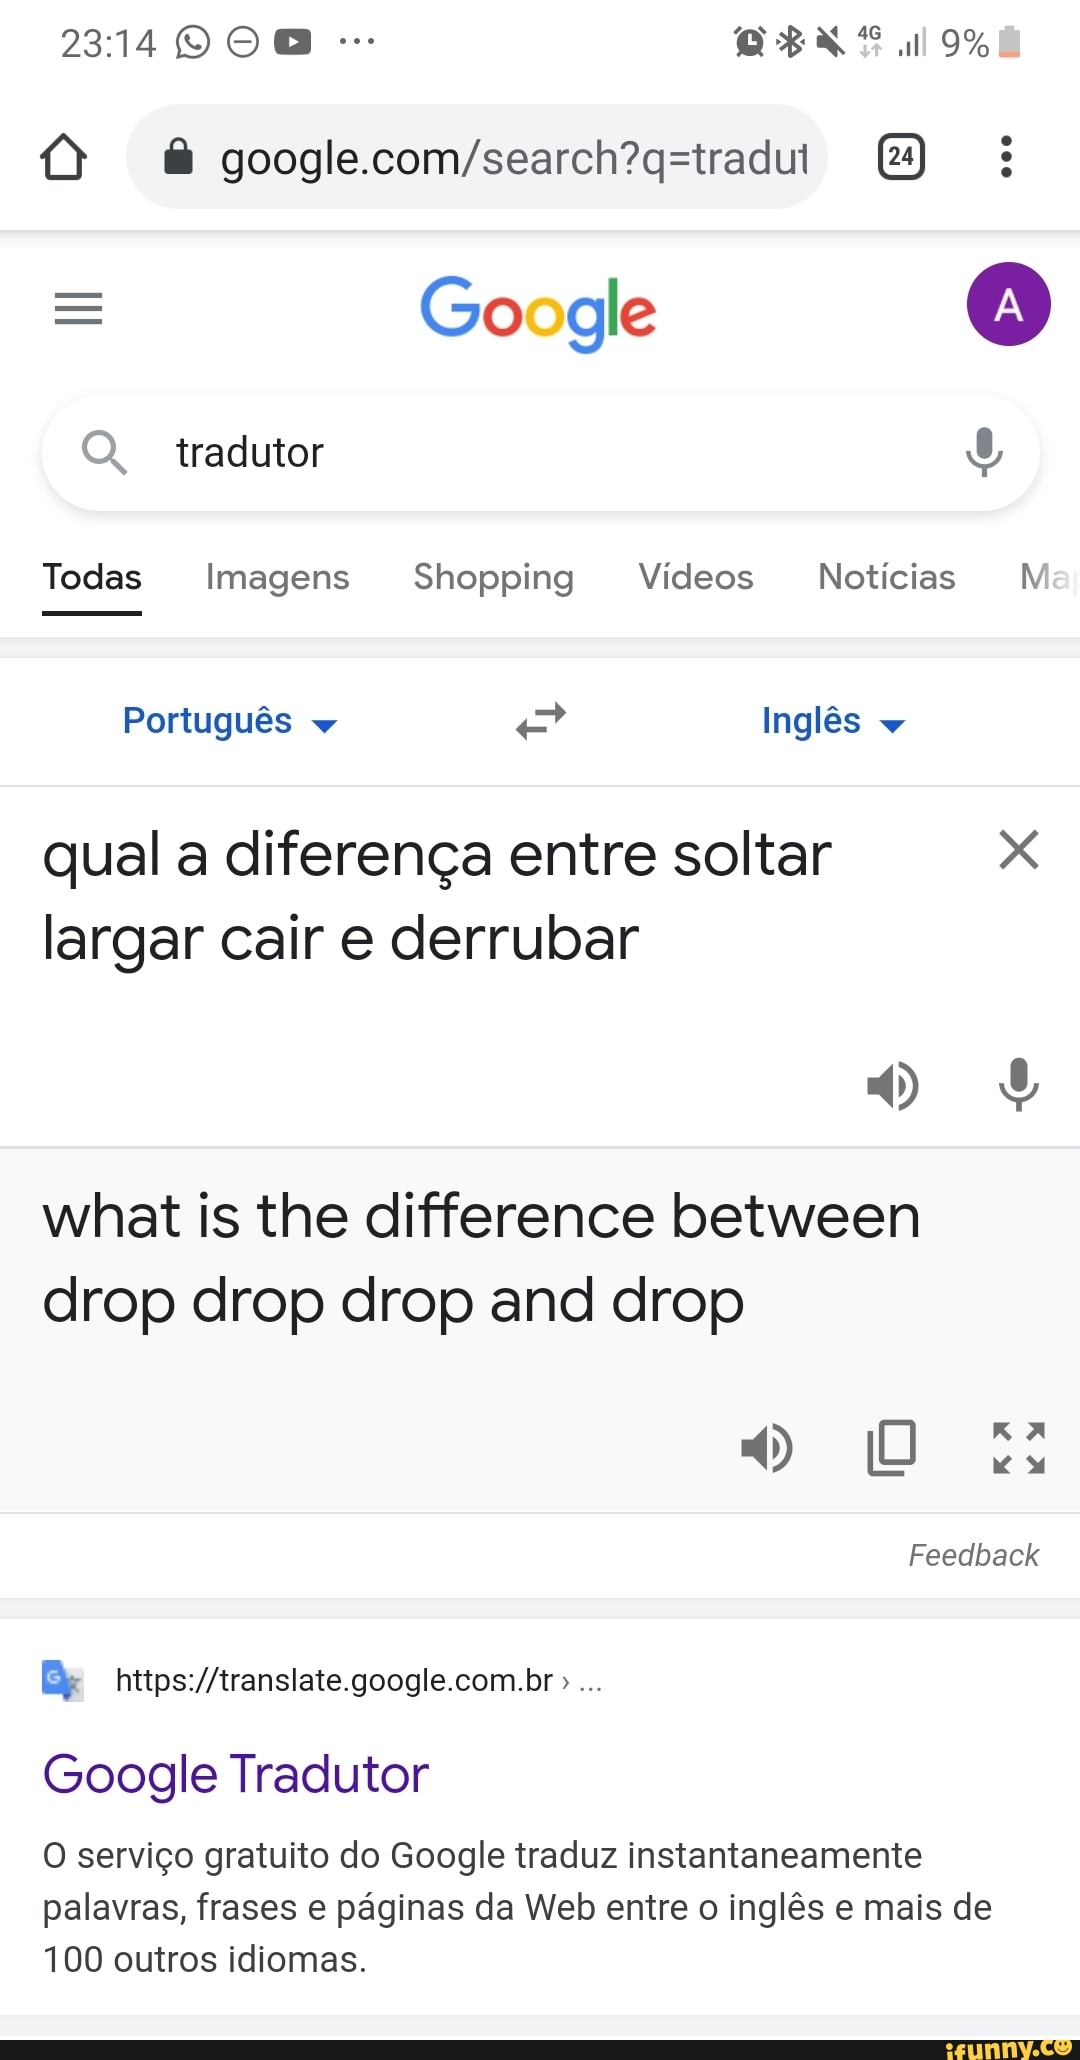 9 tradutores de inglês para português além do google translate